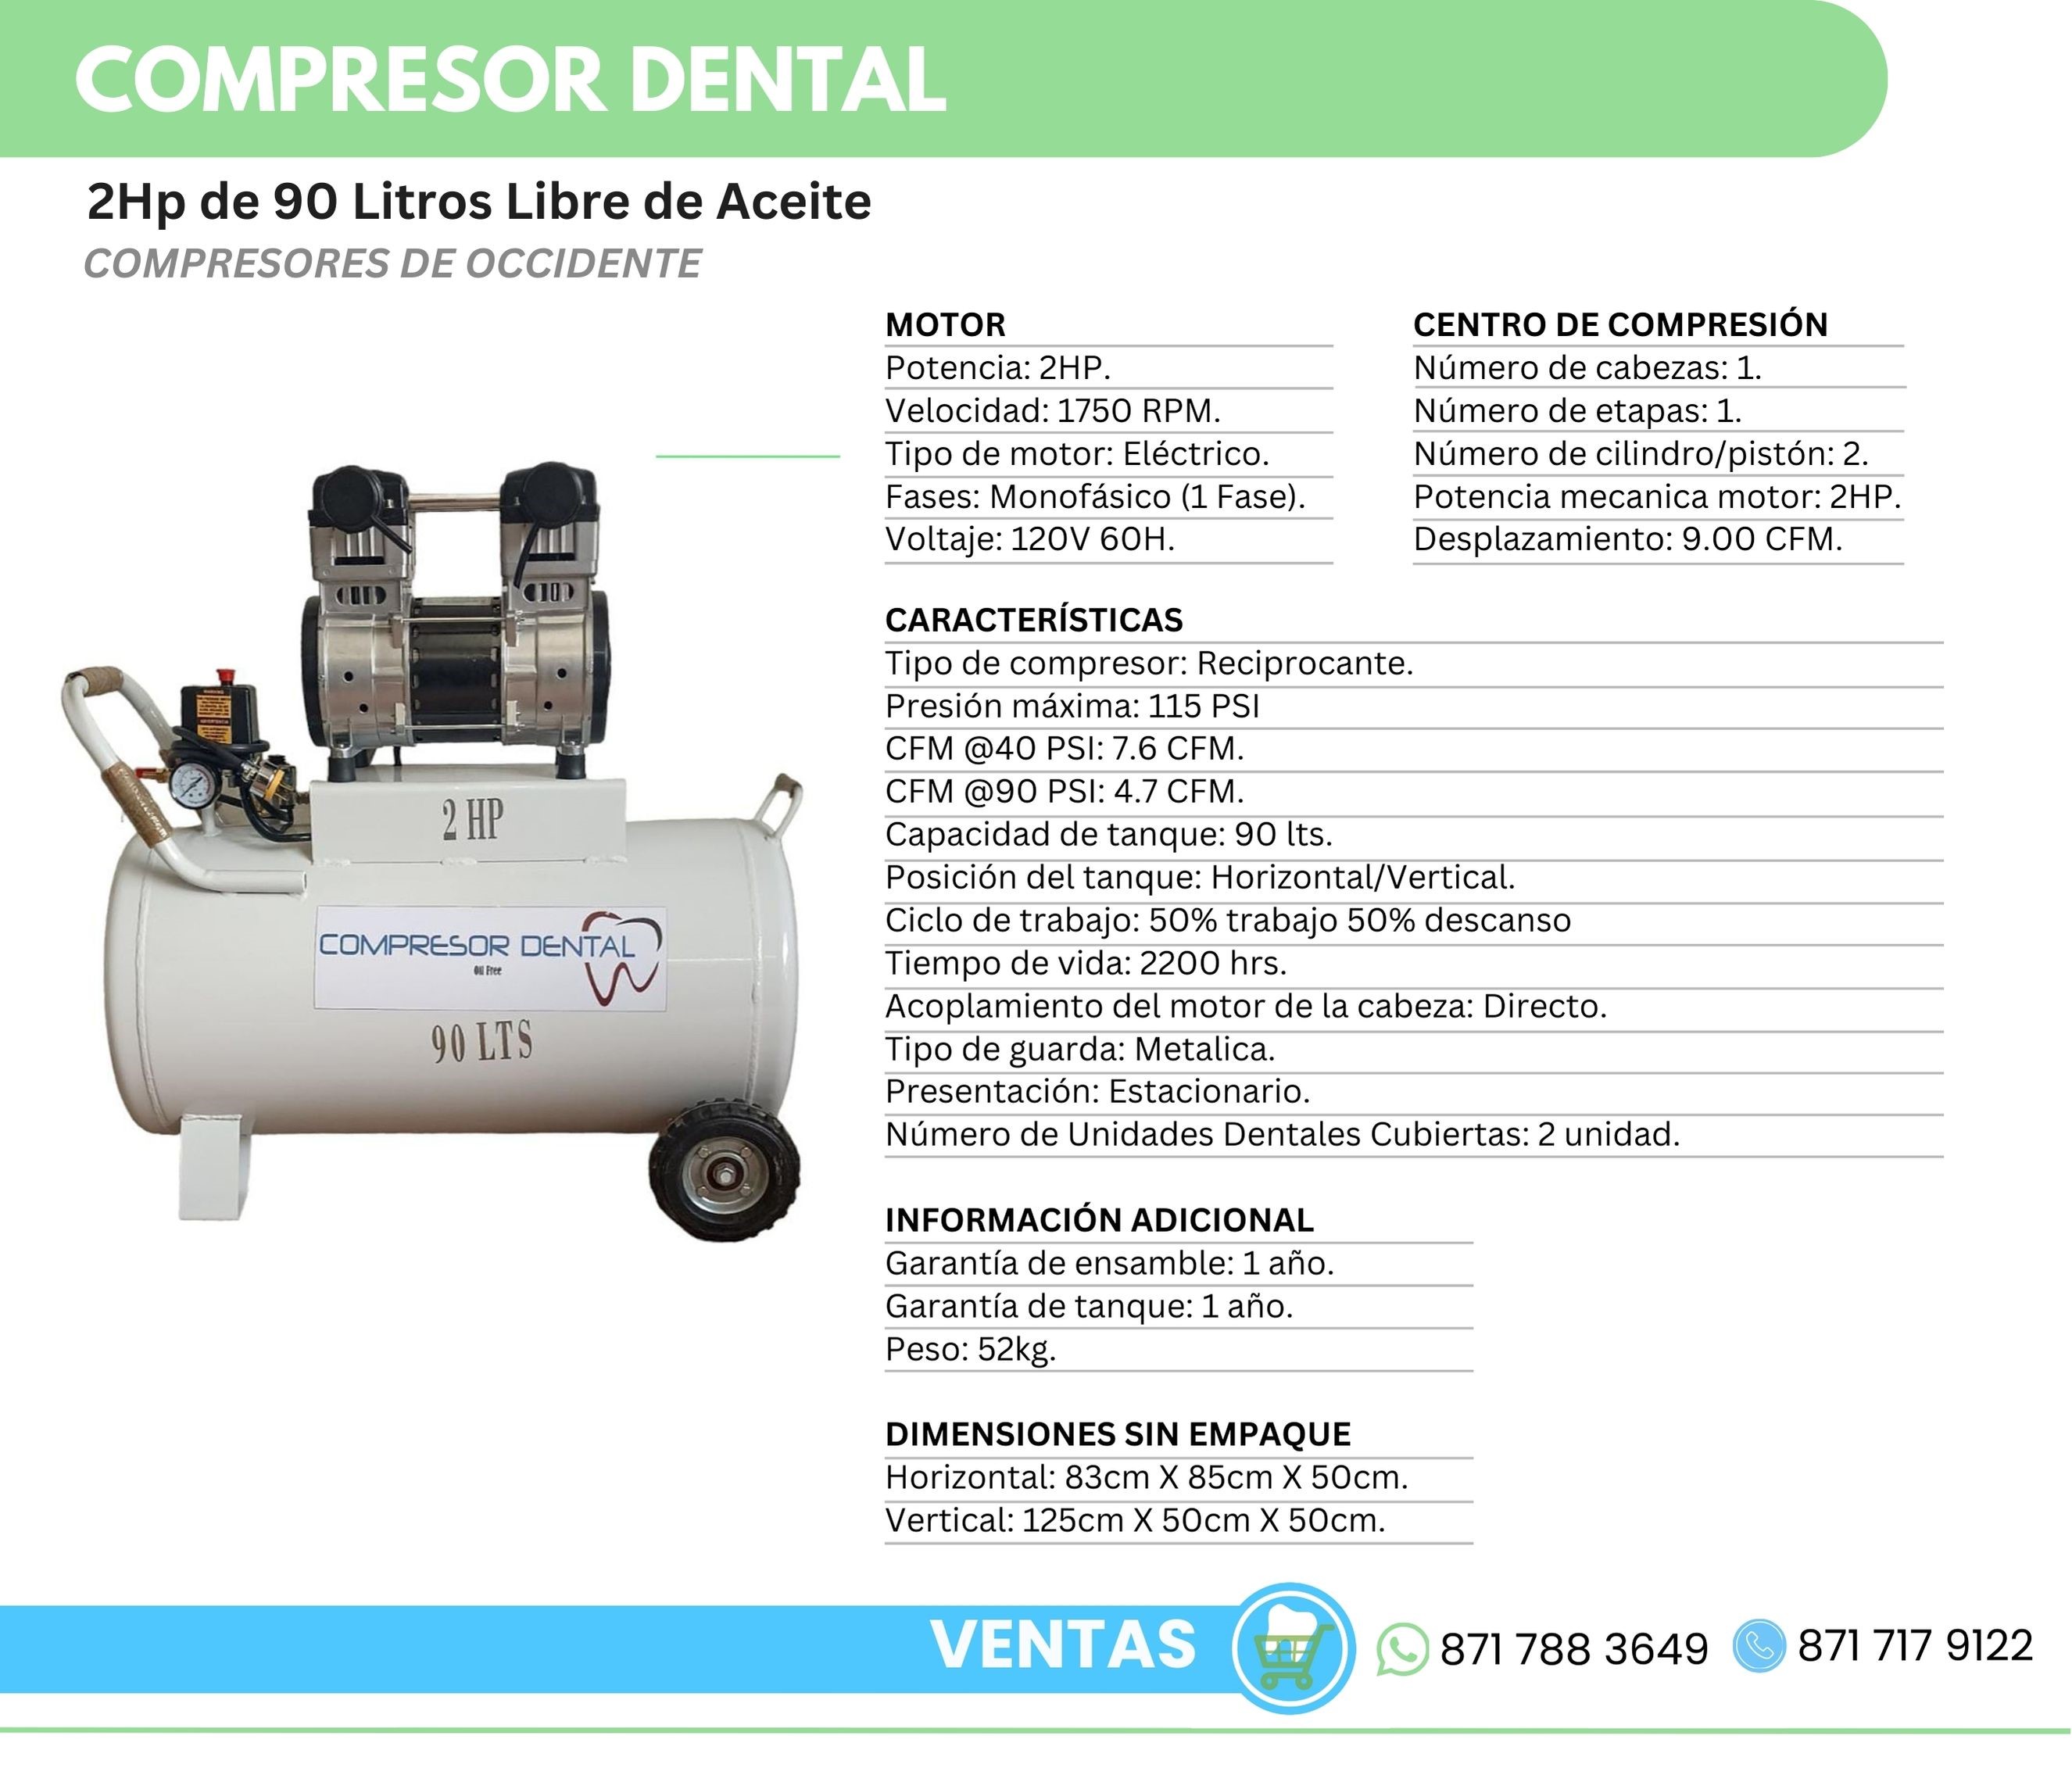 Compresor Dental 2Hp 90 Litros Libre de Aceite Compresores de Occidente Orthosign